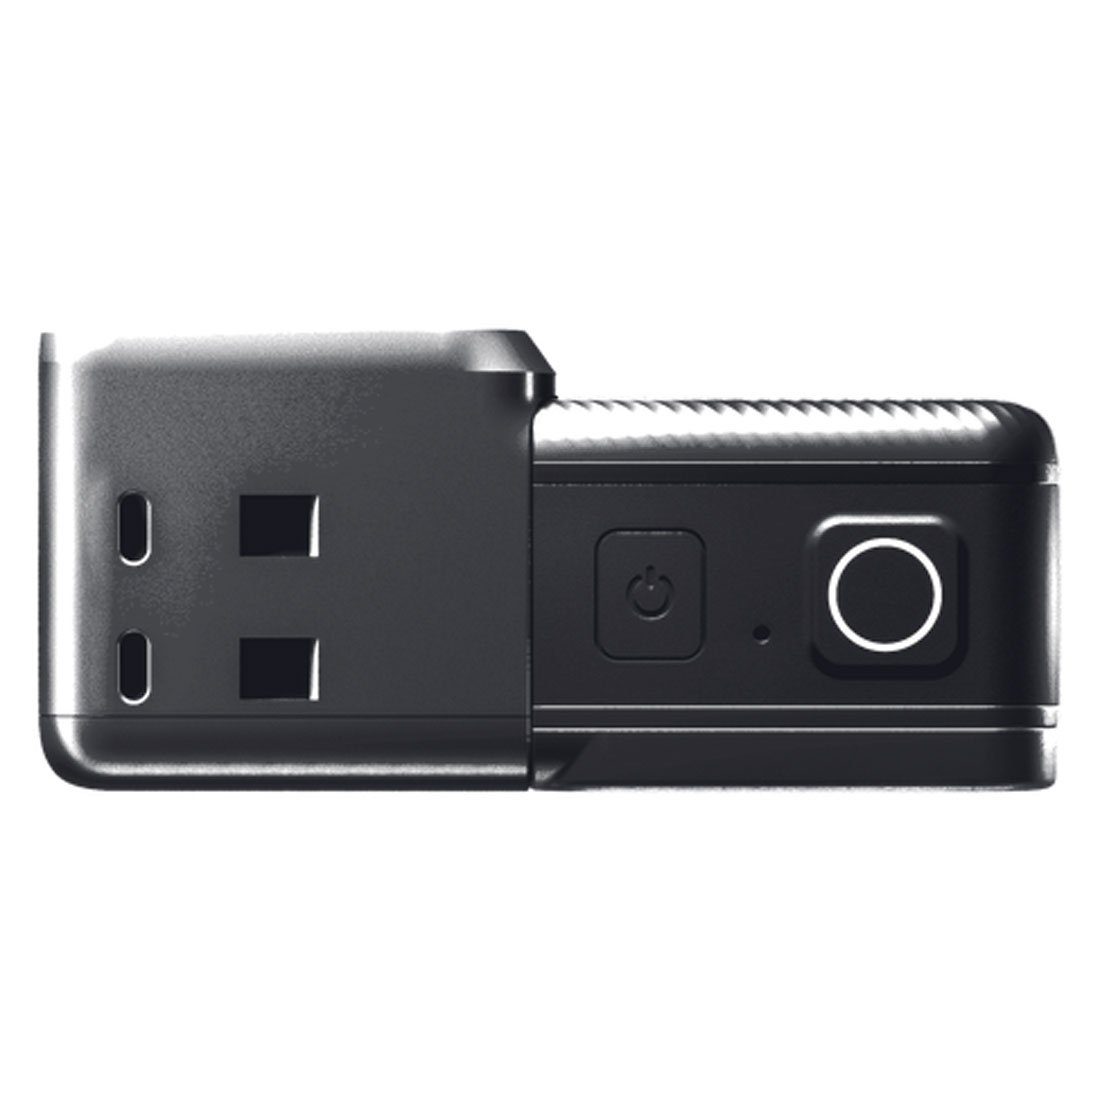 Insta360 Insta360 One RS Cam mit Action Actioncam Twin Speicherkarte